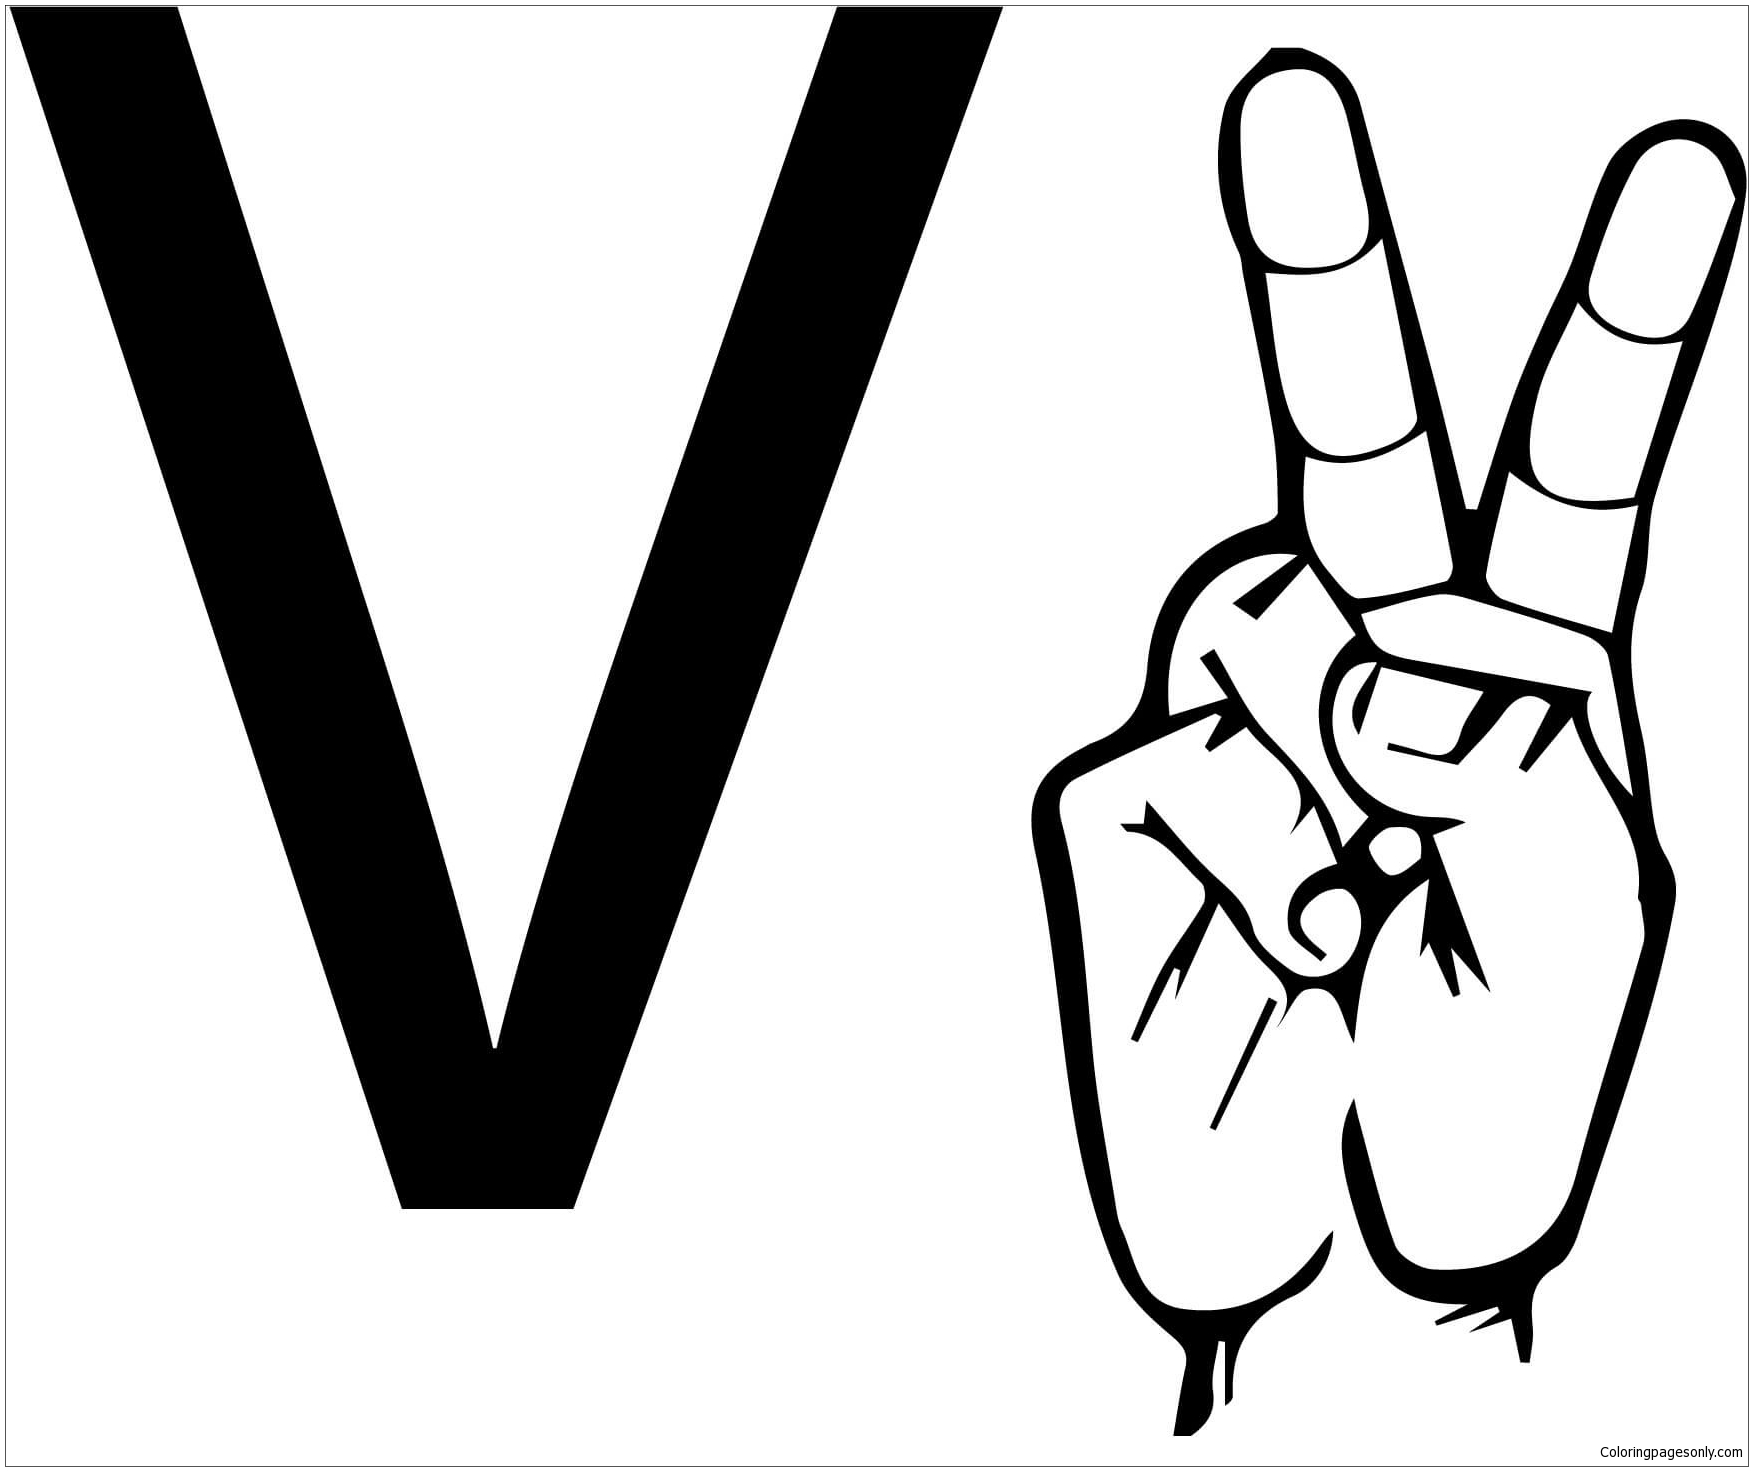 ASL 手语字母 V 来自字母 V